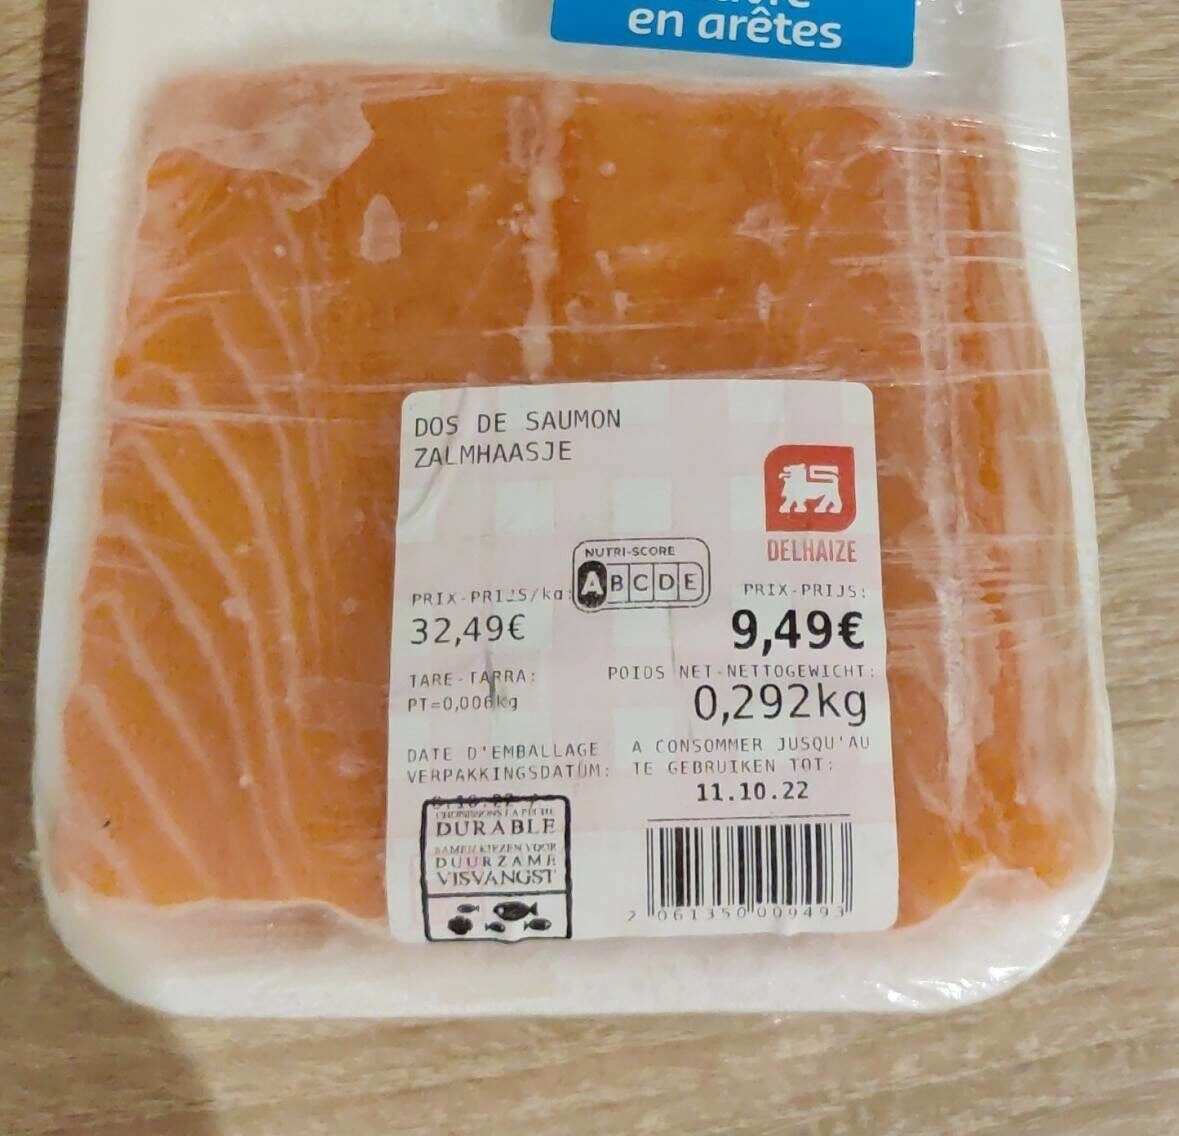 Dos de saumon - Product - fr